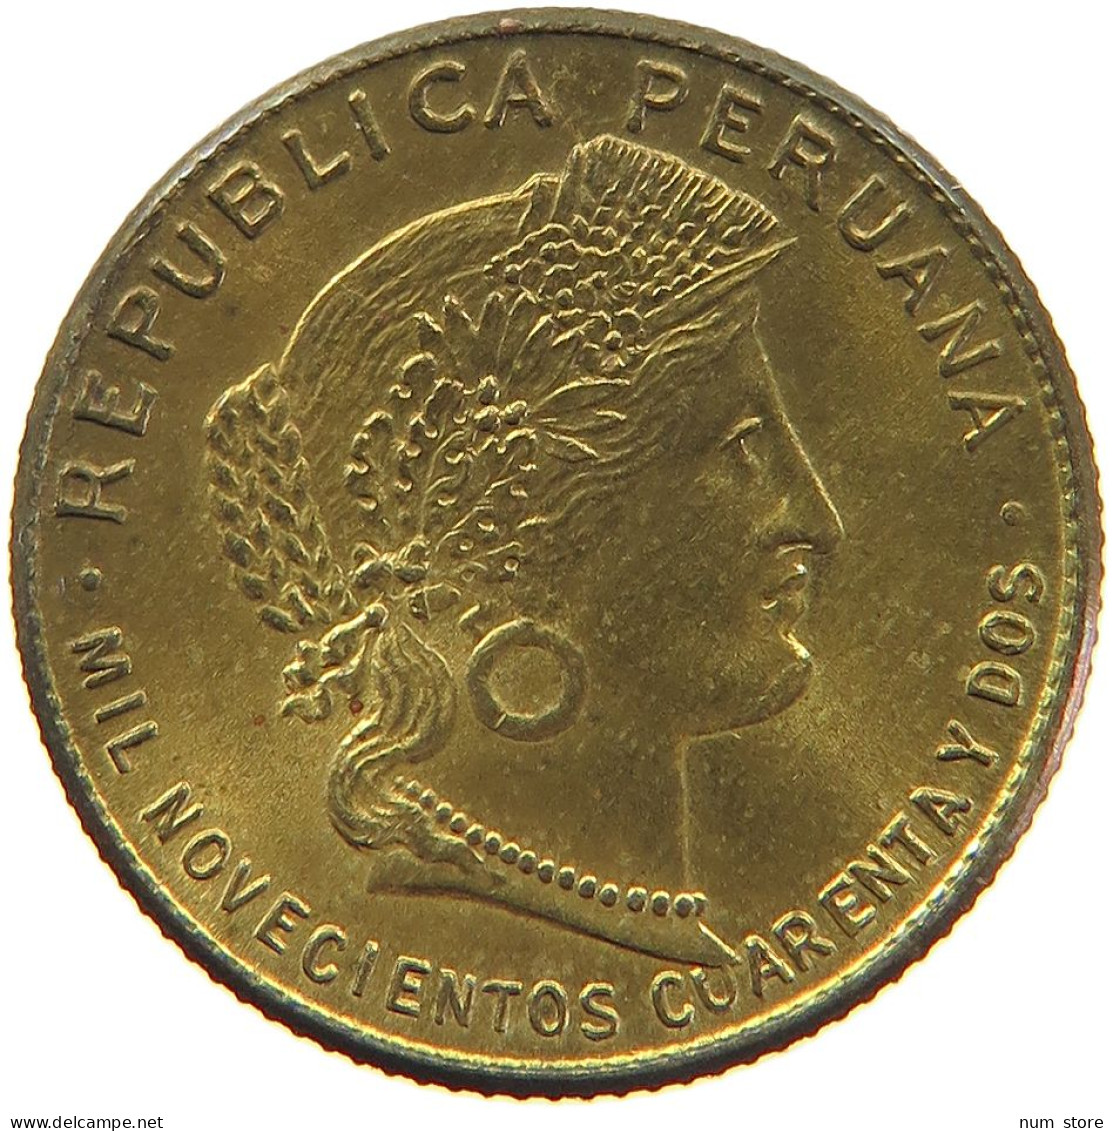 PERU 5 CENTAVOS 1943 PHILADELPHIA UNC #t030 0183 - Peru